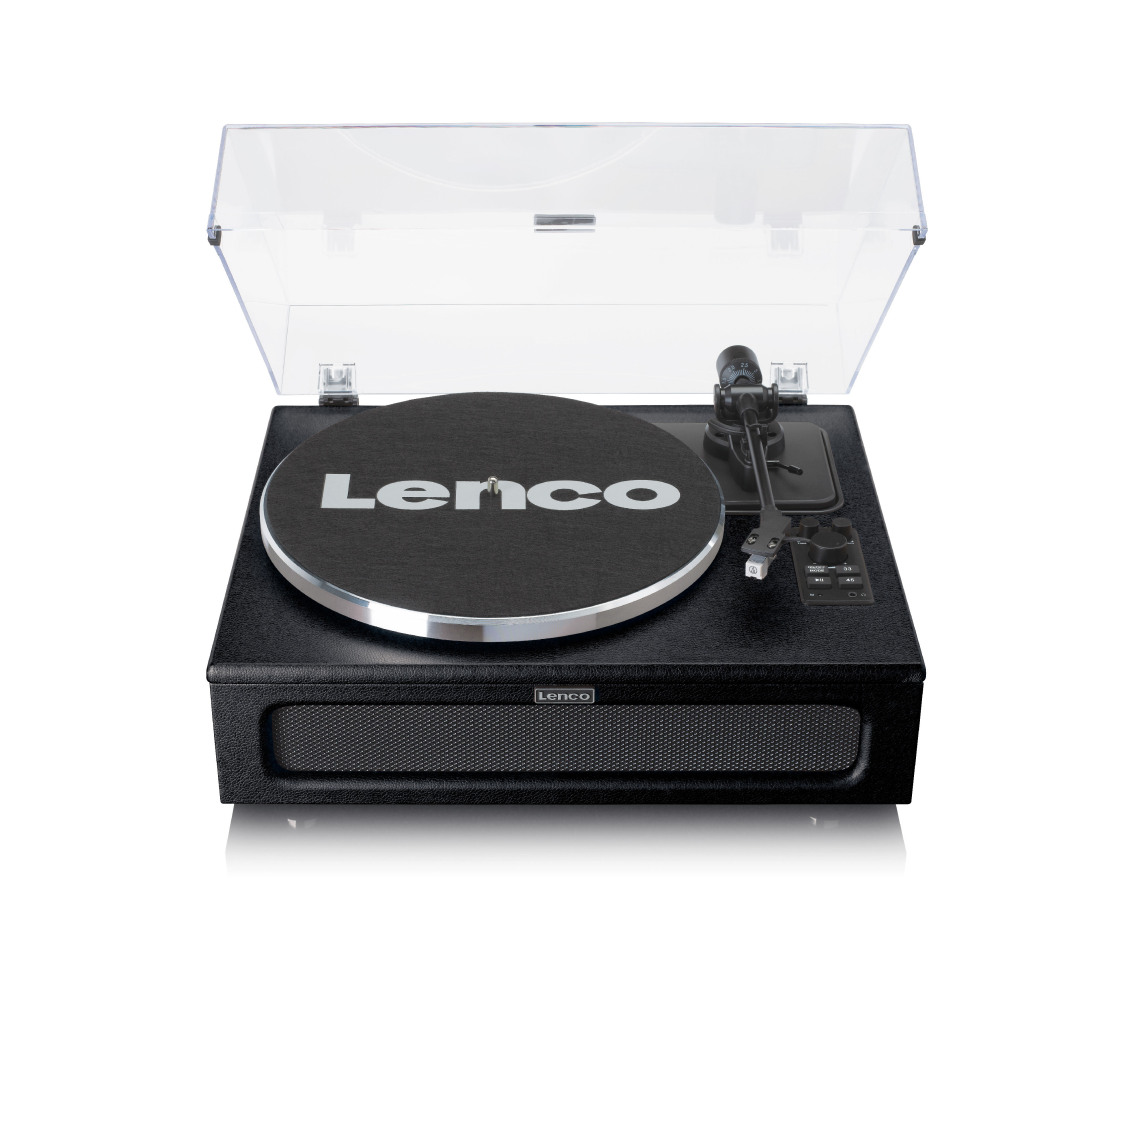 Lenco - Platine vinyle avec 4 haut-parleurs incorporés LS-430BK Noir - Platine